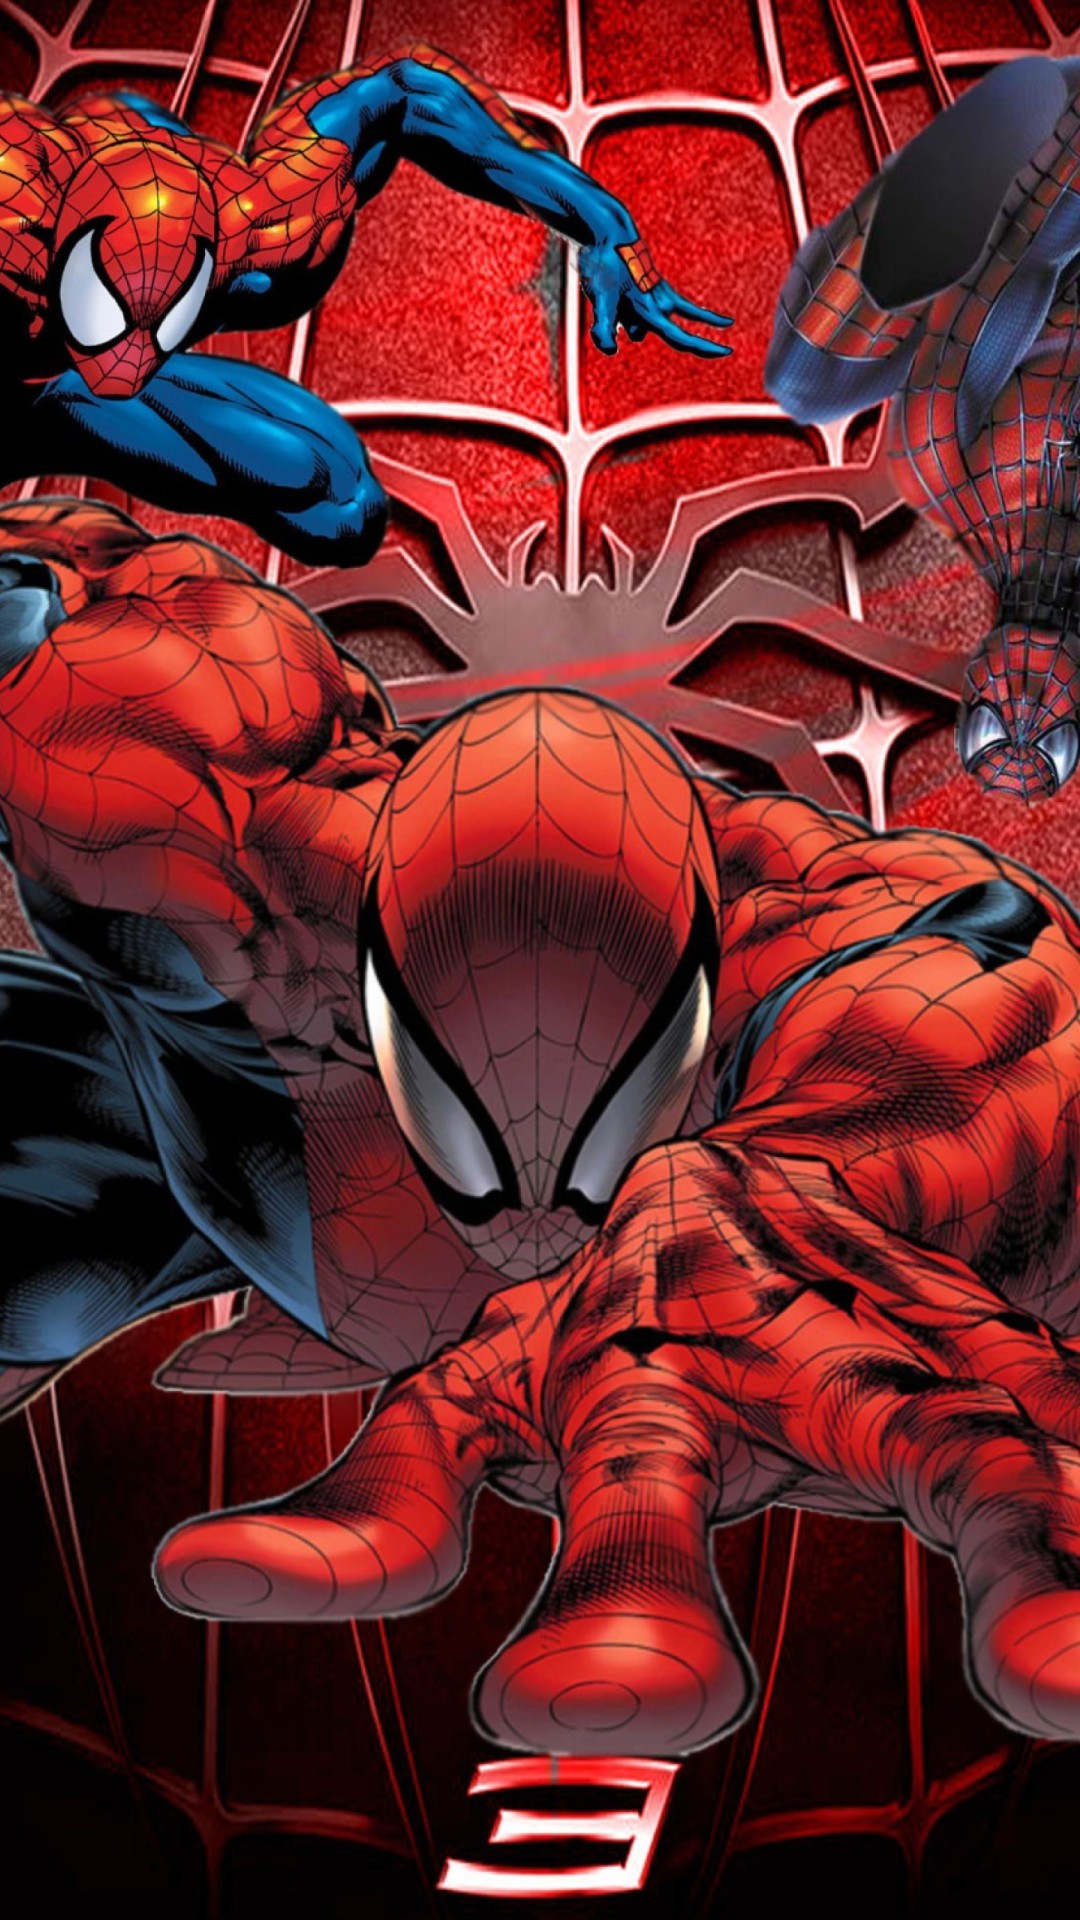 fond d'écran spiderman iphone,personnage fictif,super héros,fiction,illustration,homme araignée